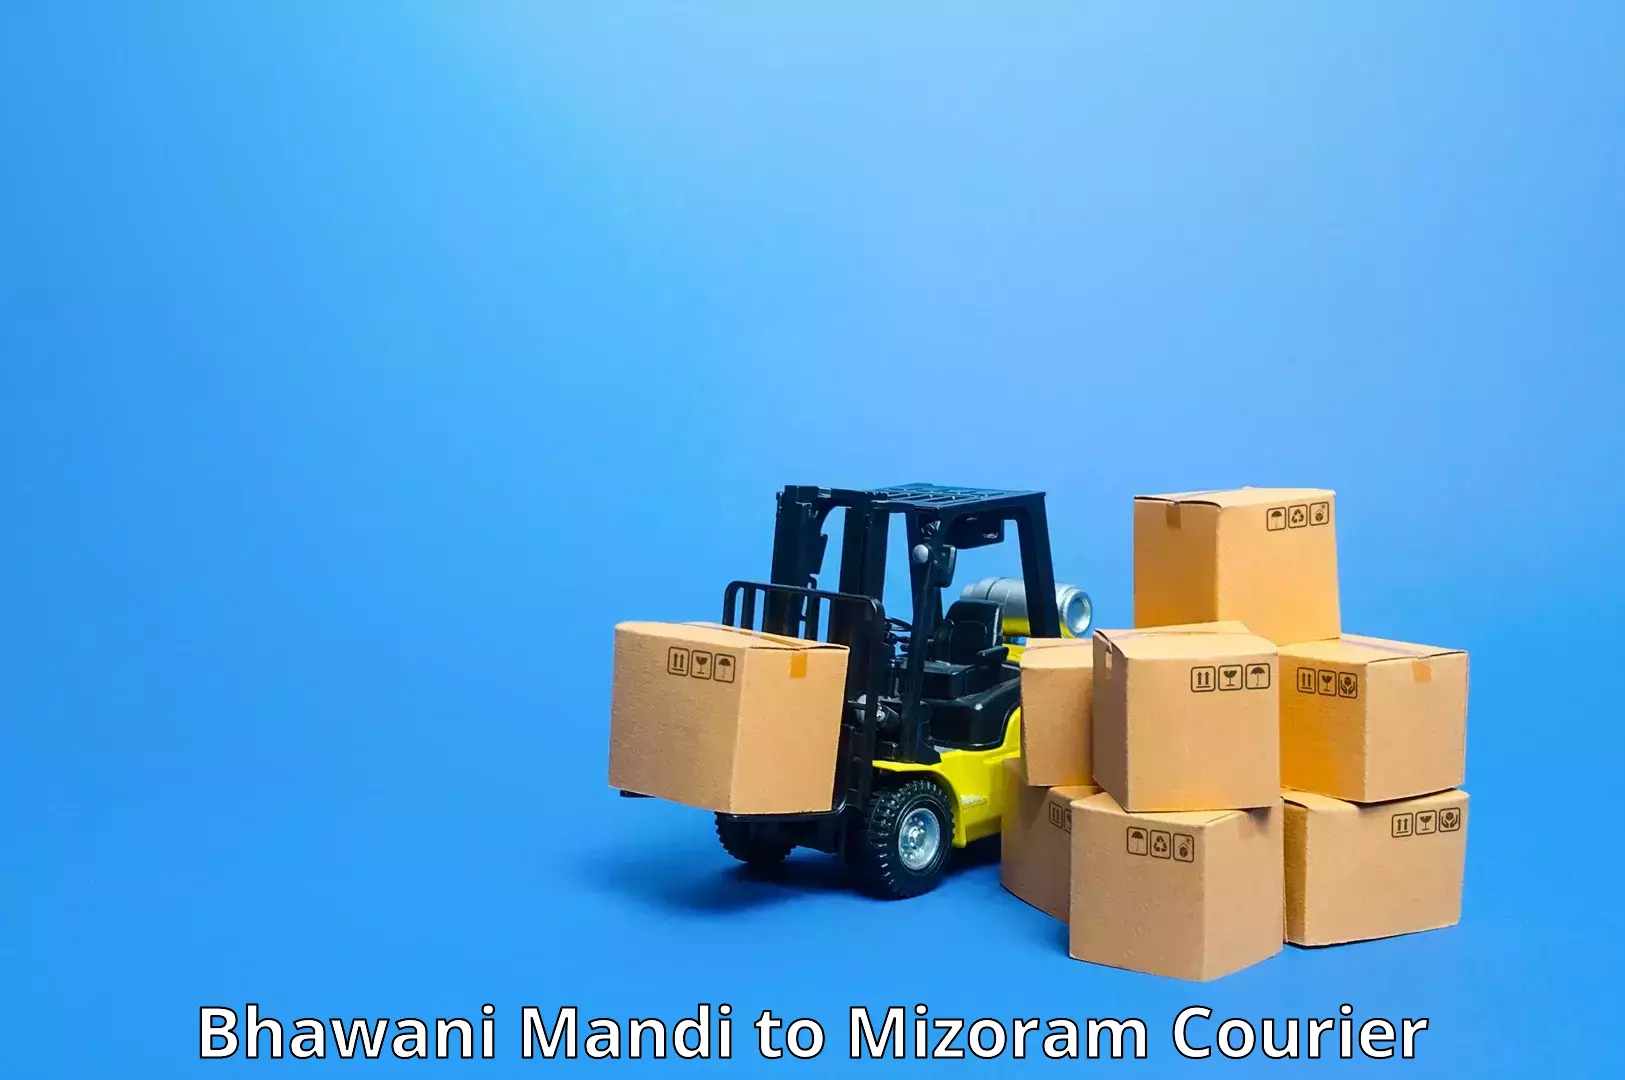 High-speed parcel service Bhawani Mandi to Aizawl